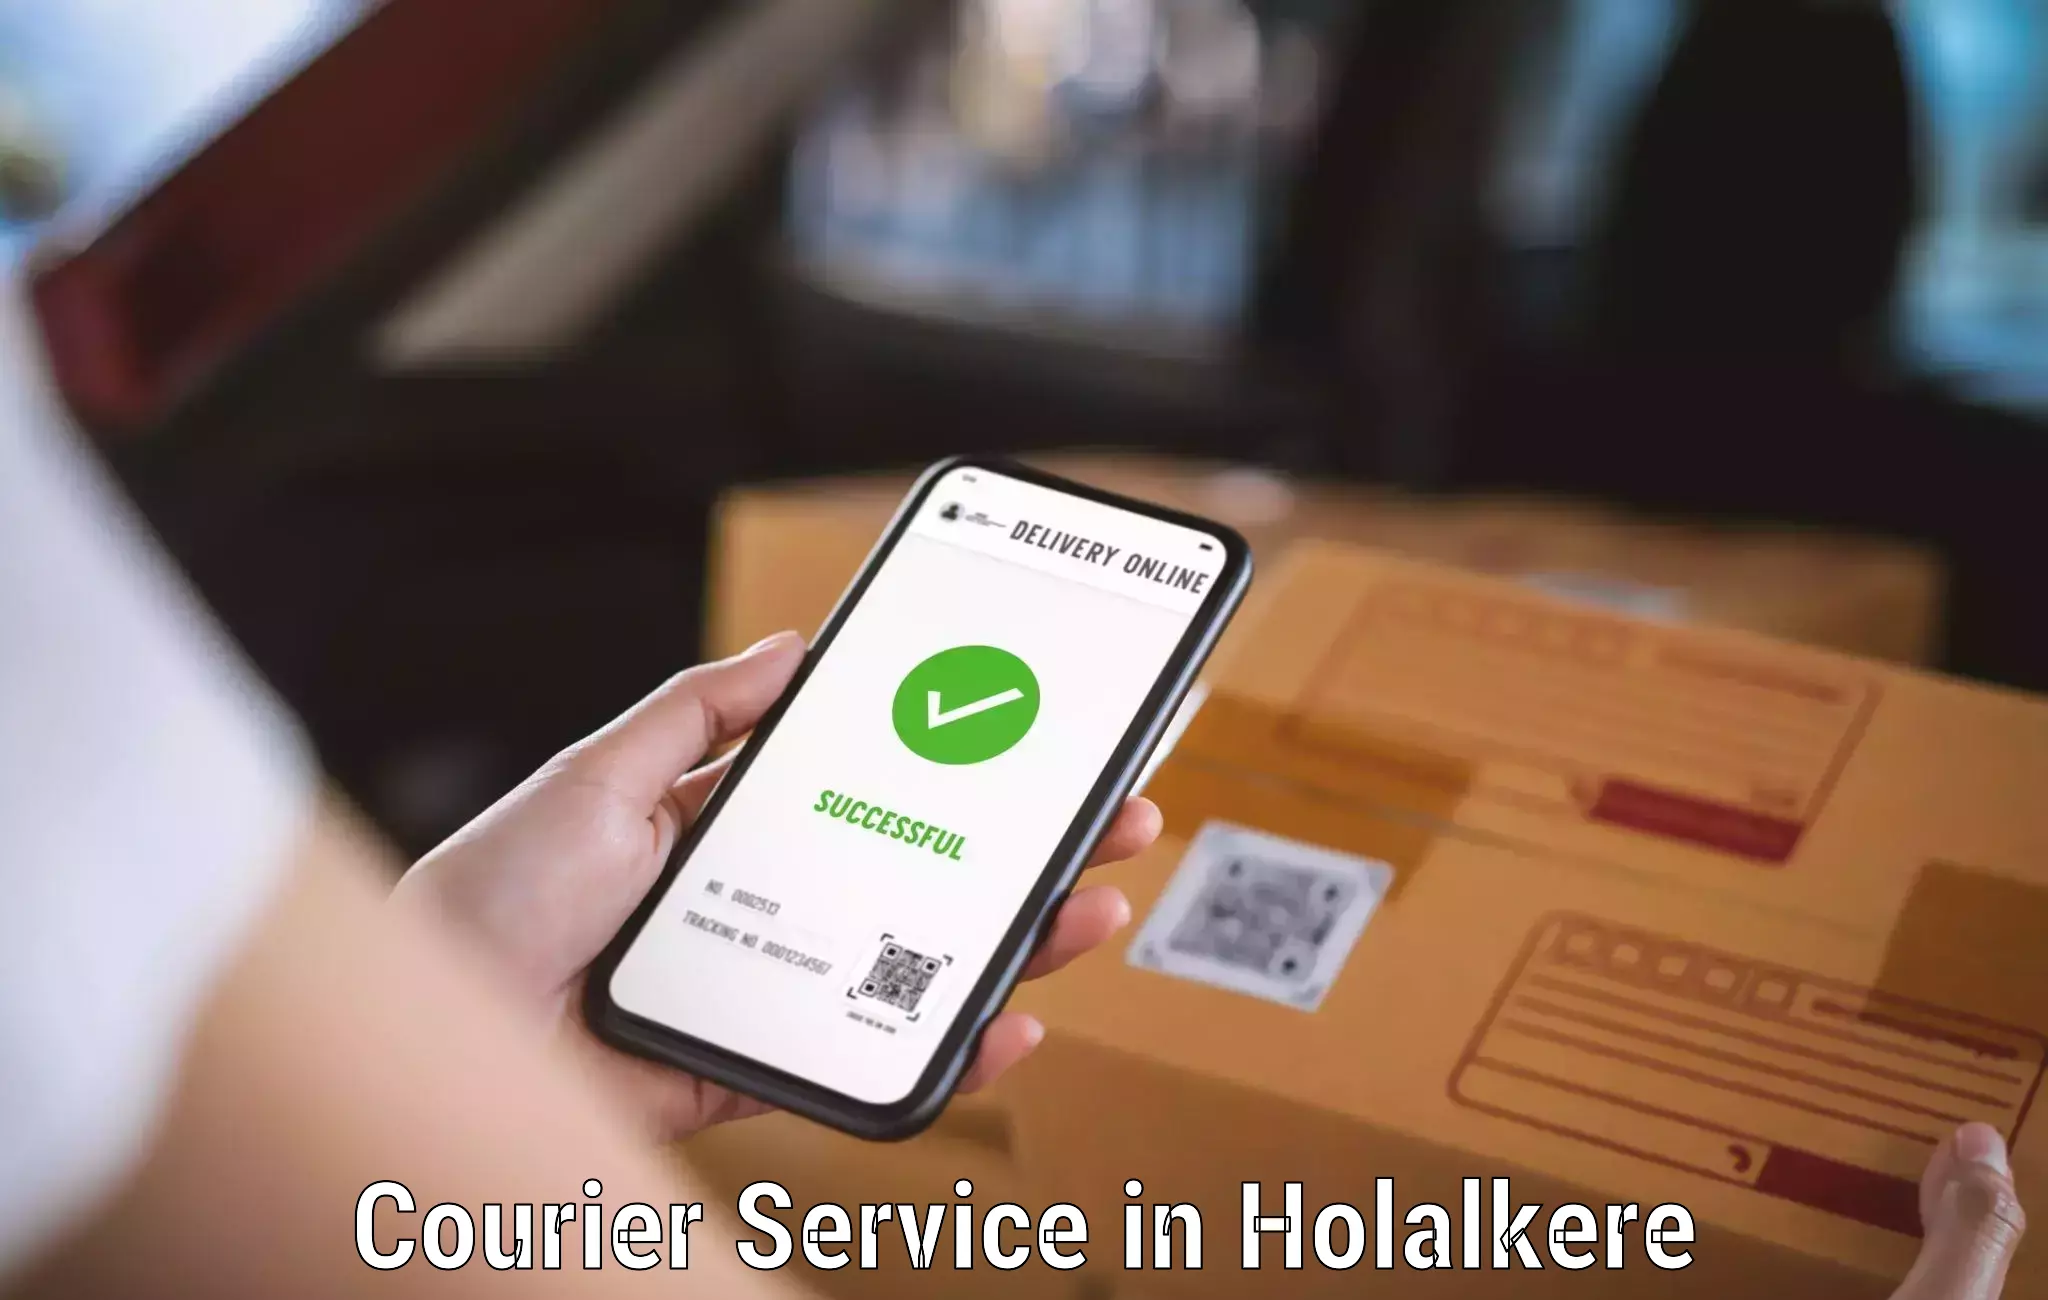 Affordable parcel service in Holalkere